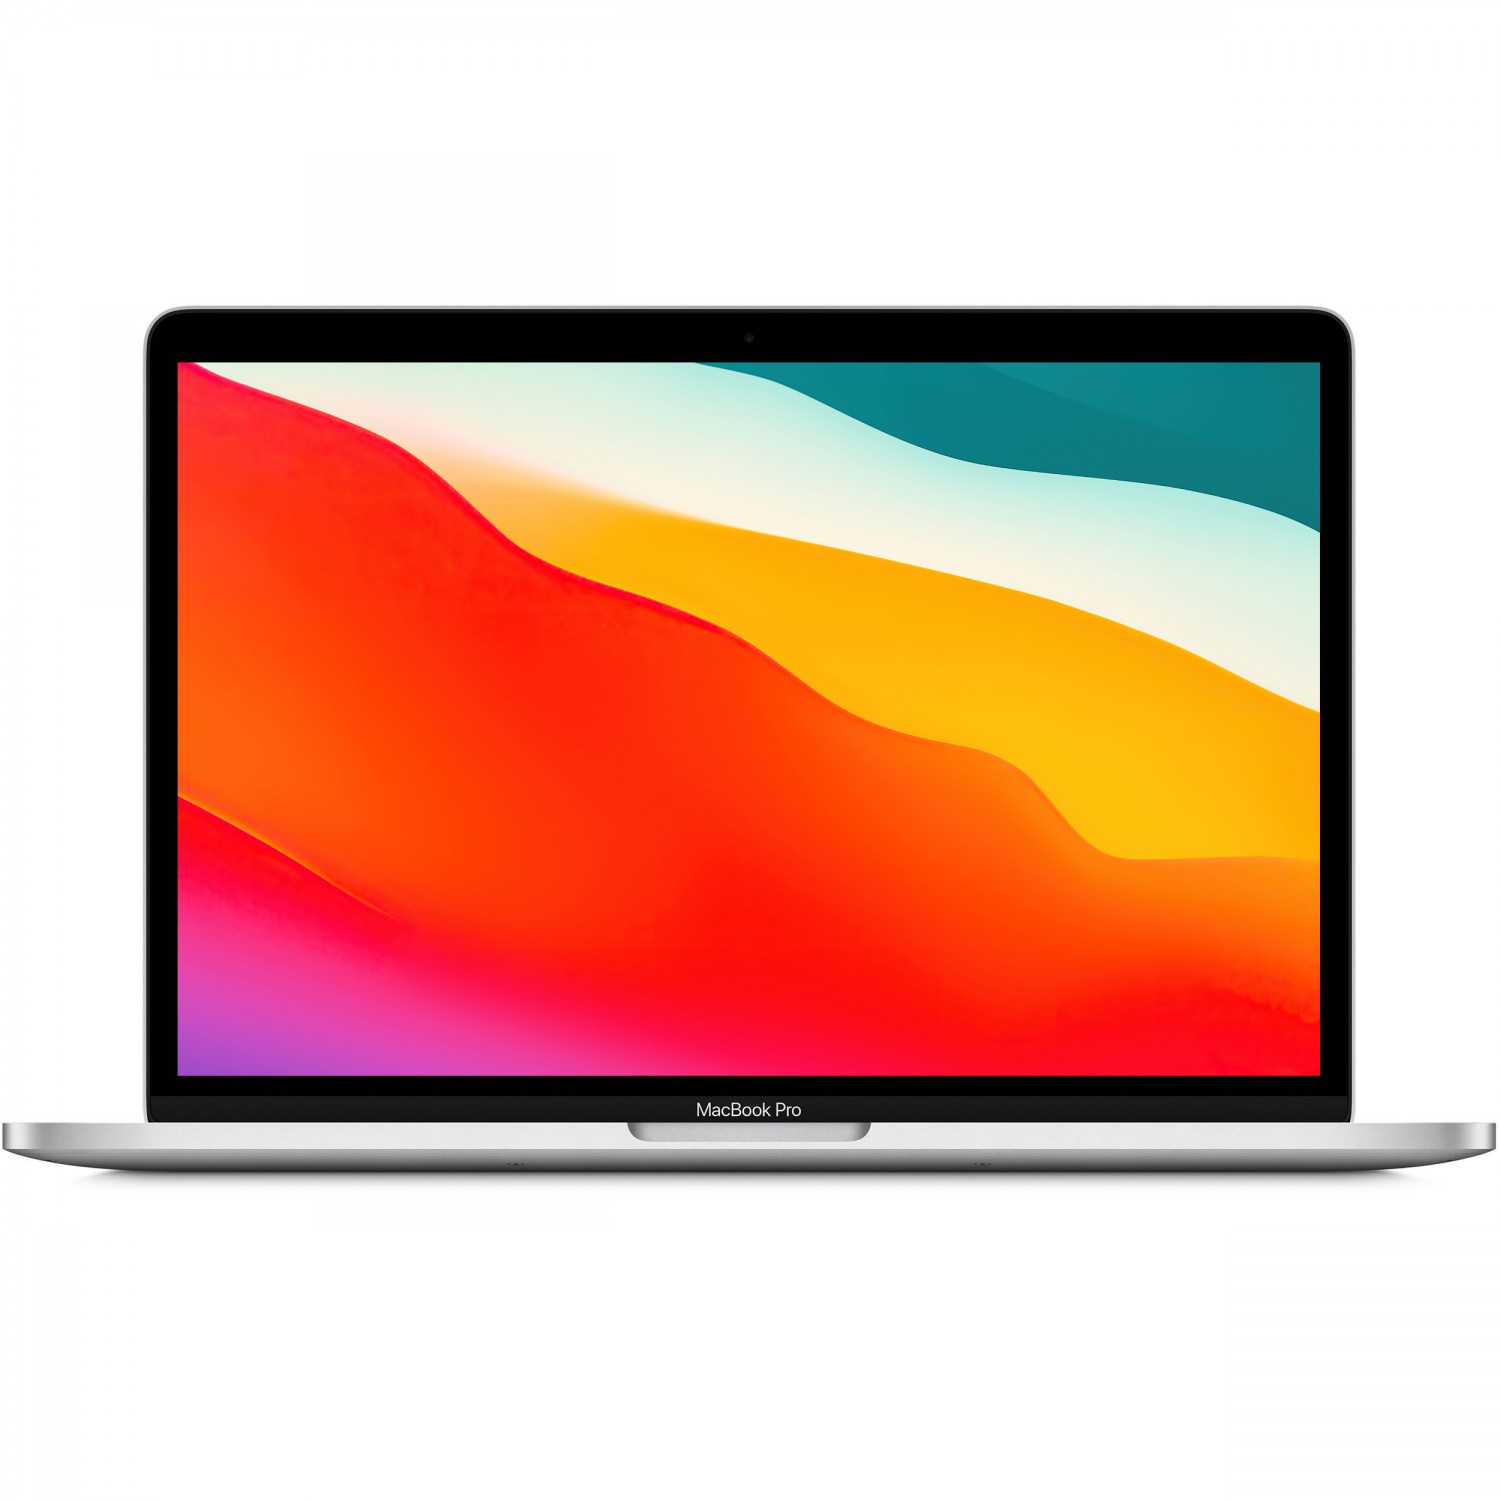 لپ تاپ Apple MacBook Pro 13 2020 CTO - Silver - B